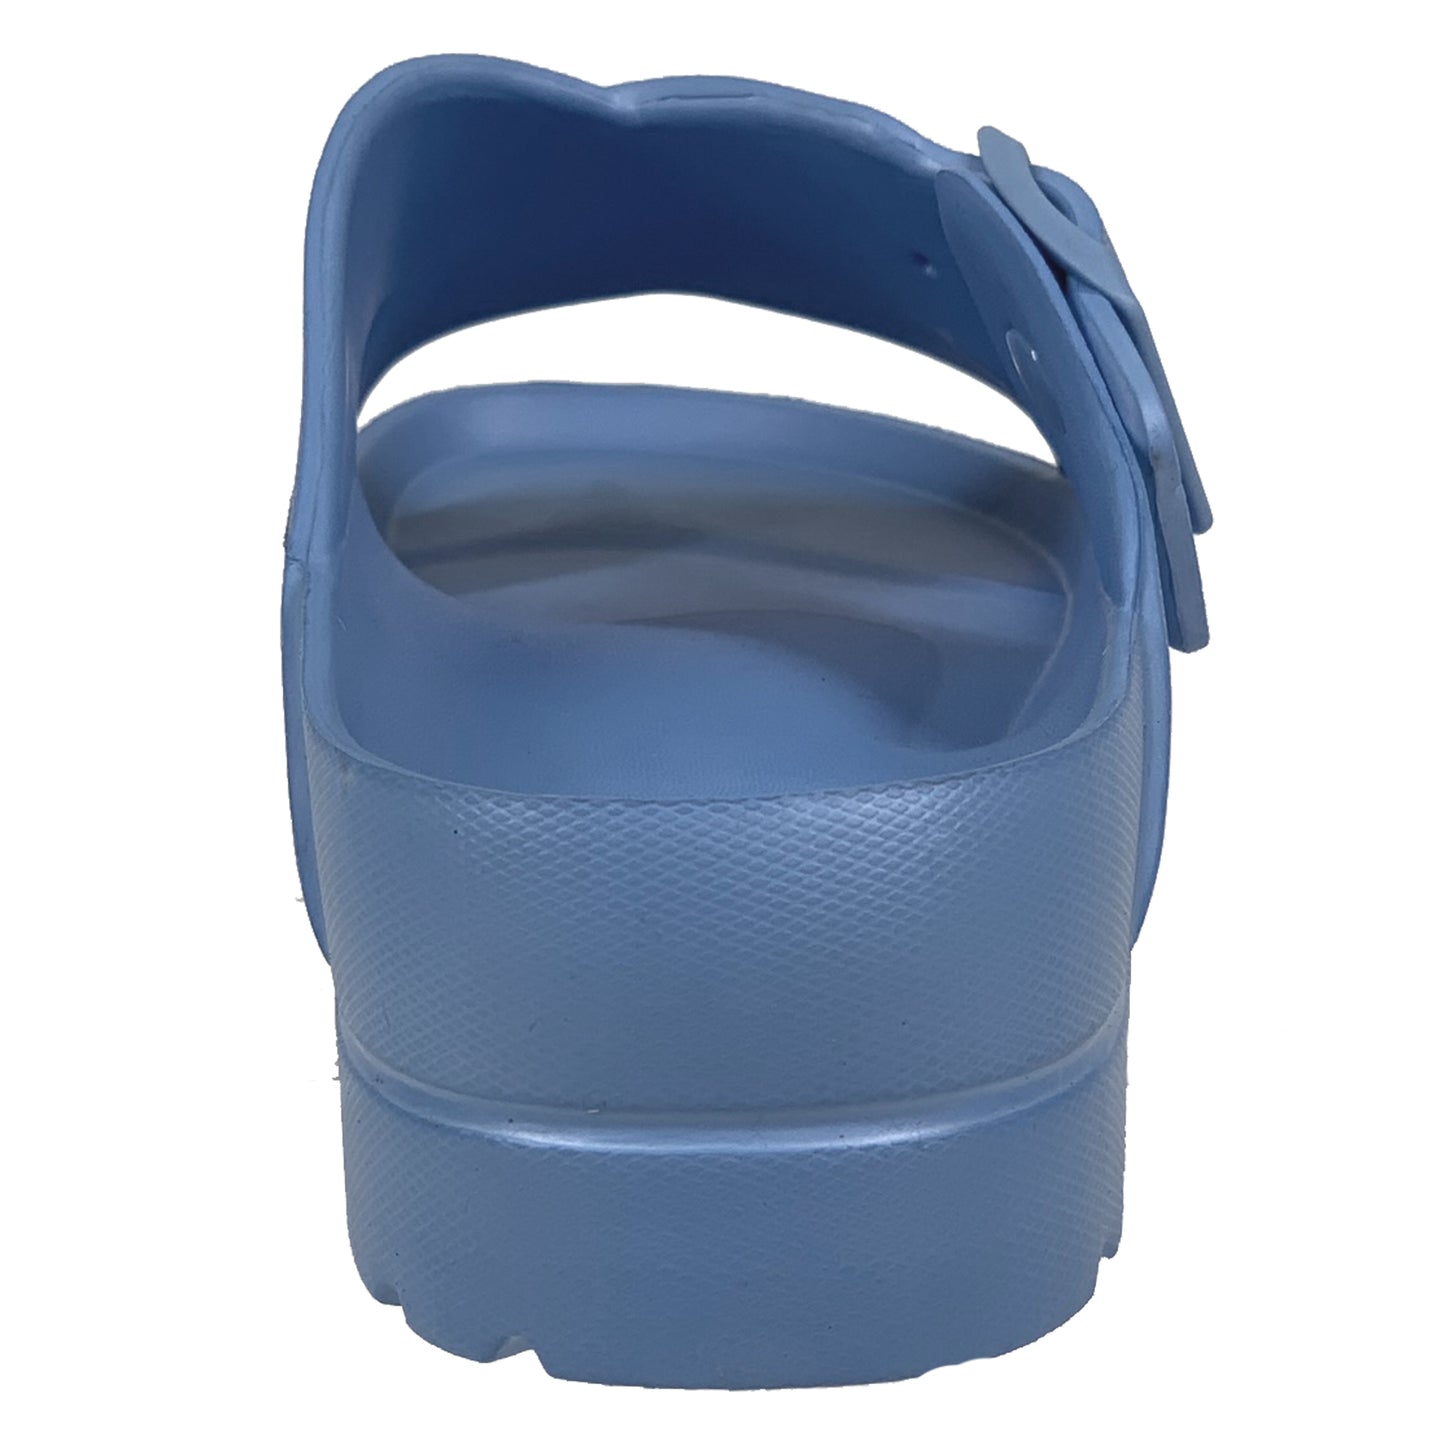 SOBEYO Light-Weight  Platform Sandals Criss-Cross Adjustable Buckles Blue